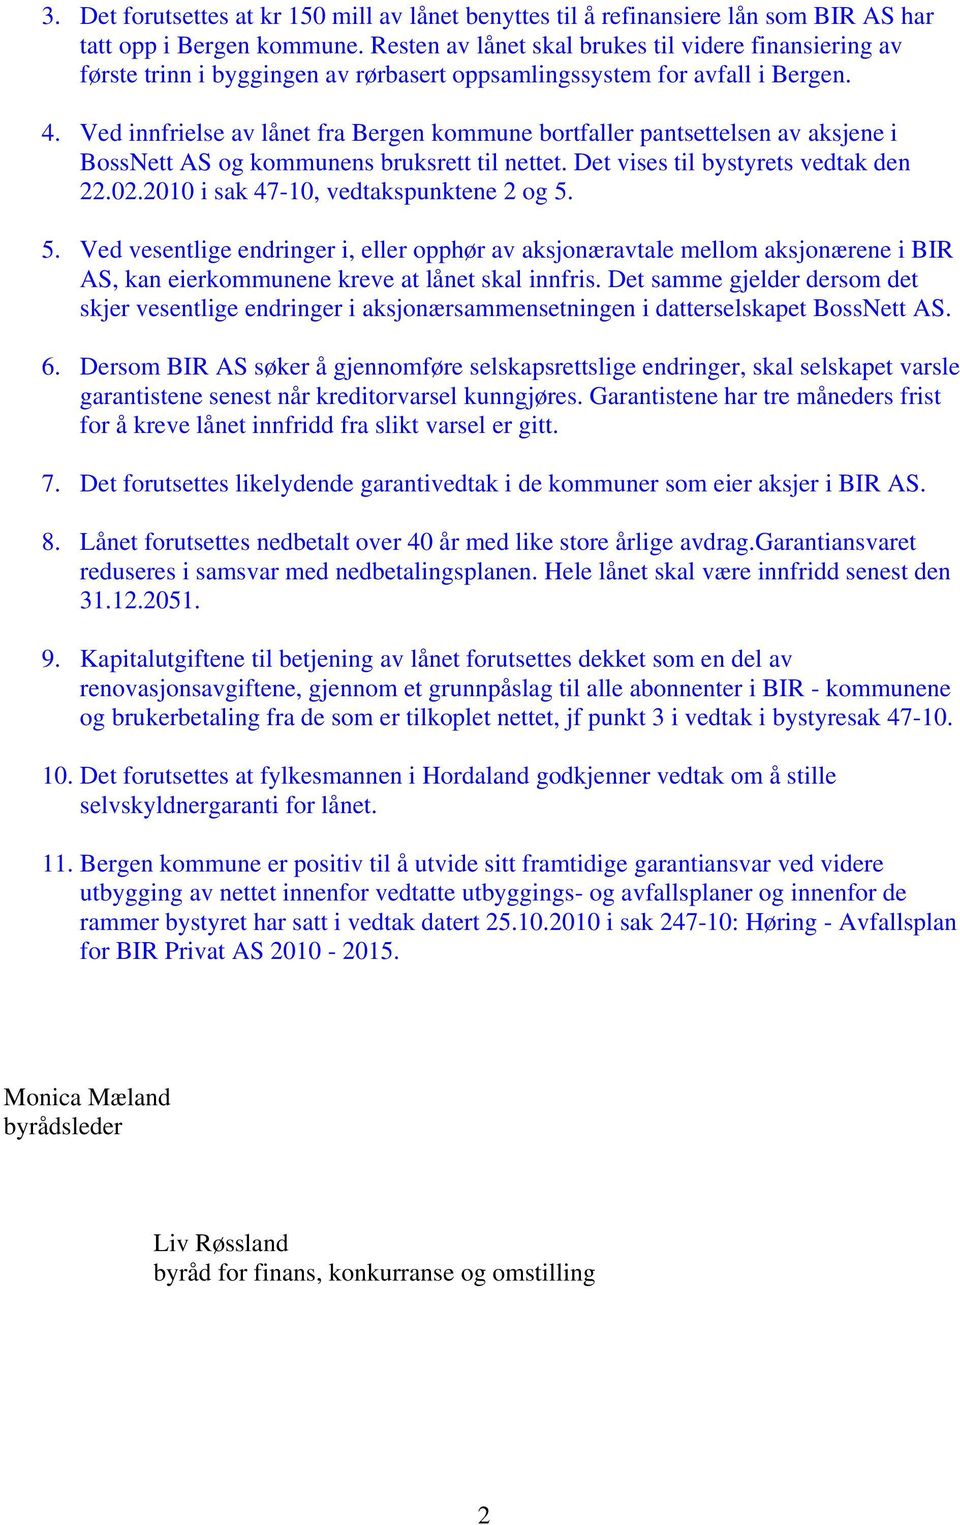 Ved innfrielse av lånet fra Bergen kommune bortfaller pantsettelsen av aksjene i BossNett AS og kommunens bruksrett til nettet. Det vises til bystyrets vedtak den 22.02.